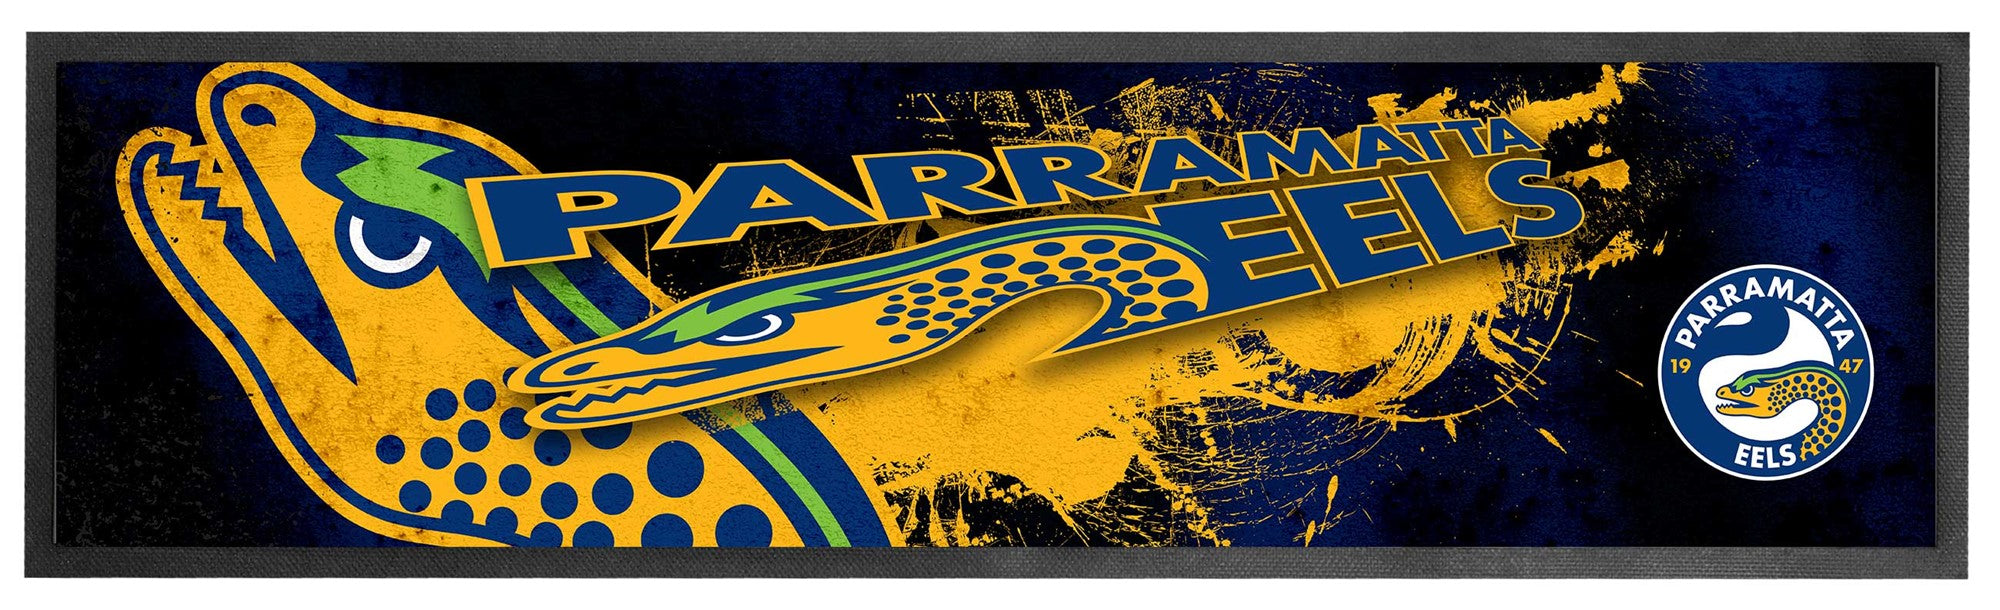 Parramatta Eels Logo Bar Runner